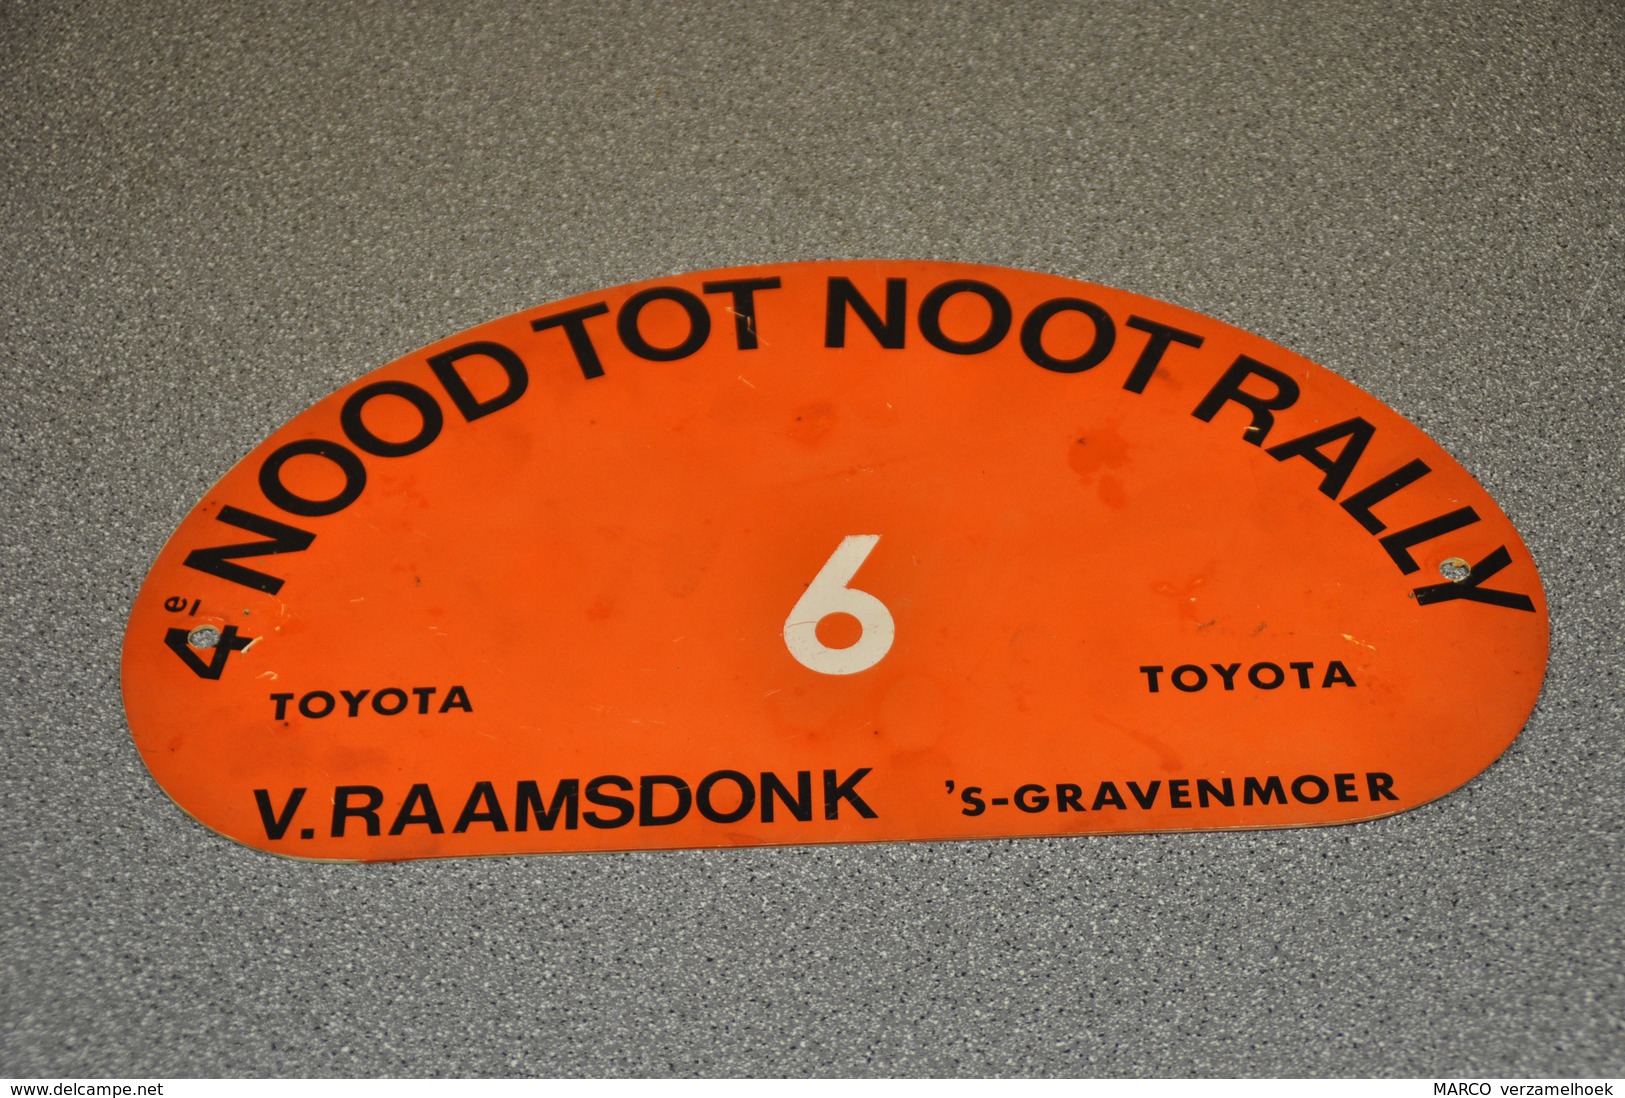 Rally Plaat-rallye Plaque Plastic: 4e Nood Tot Noot Rally Toyota Van Raamsdonk 's-gravenmoer (NL) - Rallyeschilder